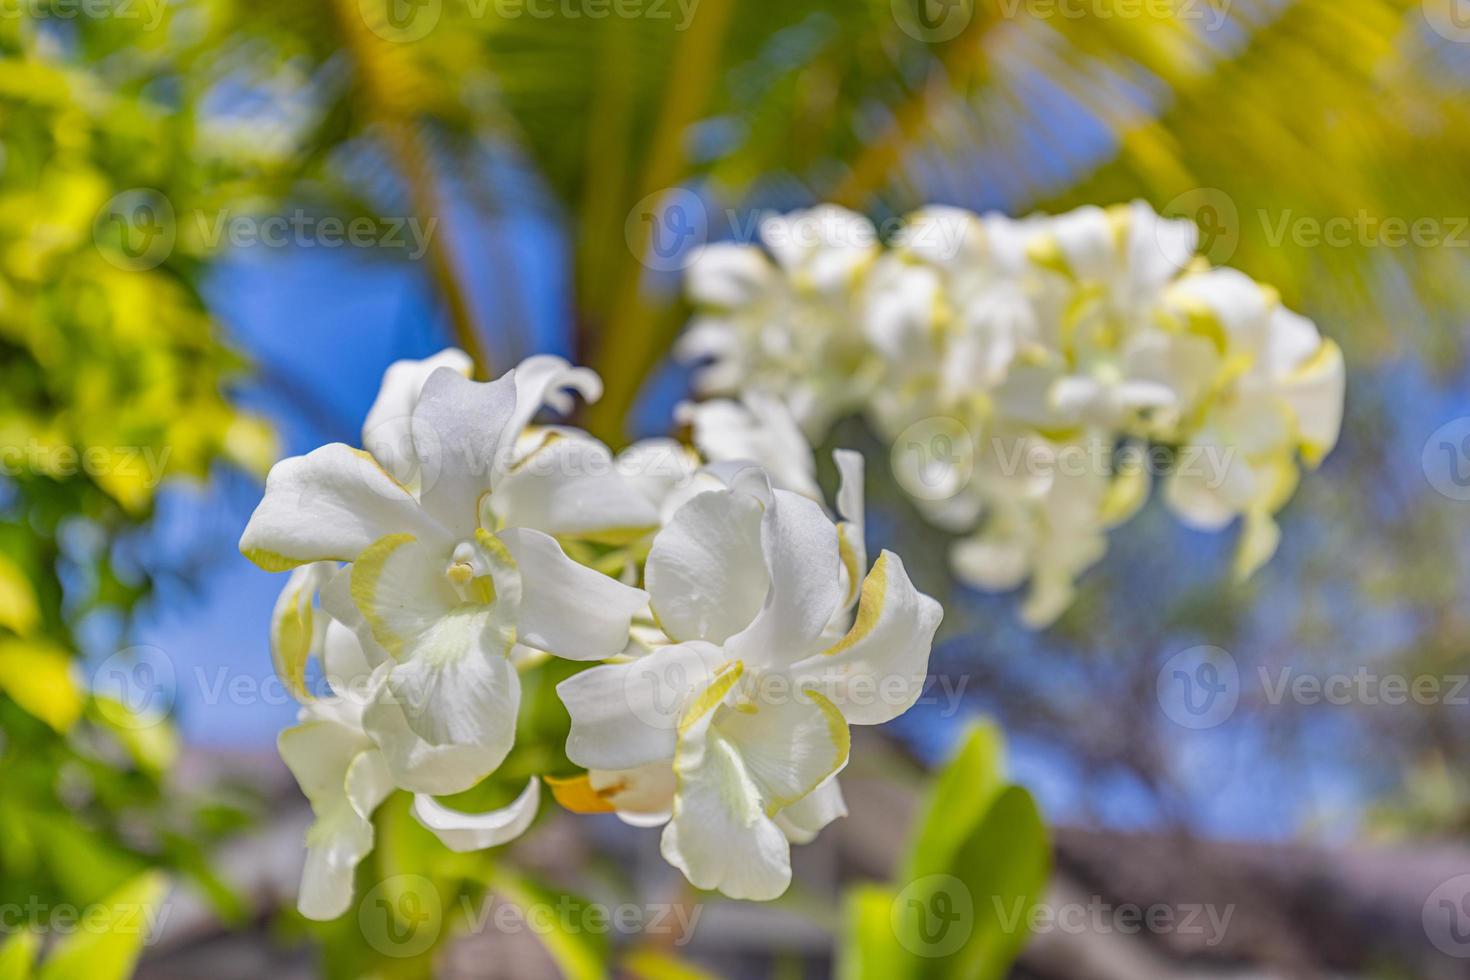 plumeria branca e amarela florescendo em árvores, frangipani, flor tropical, close-up tiro foto